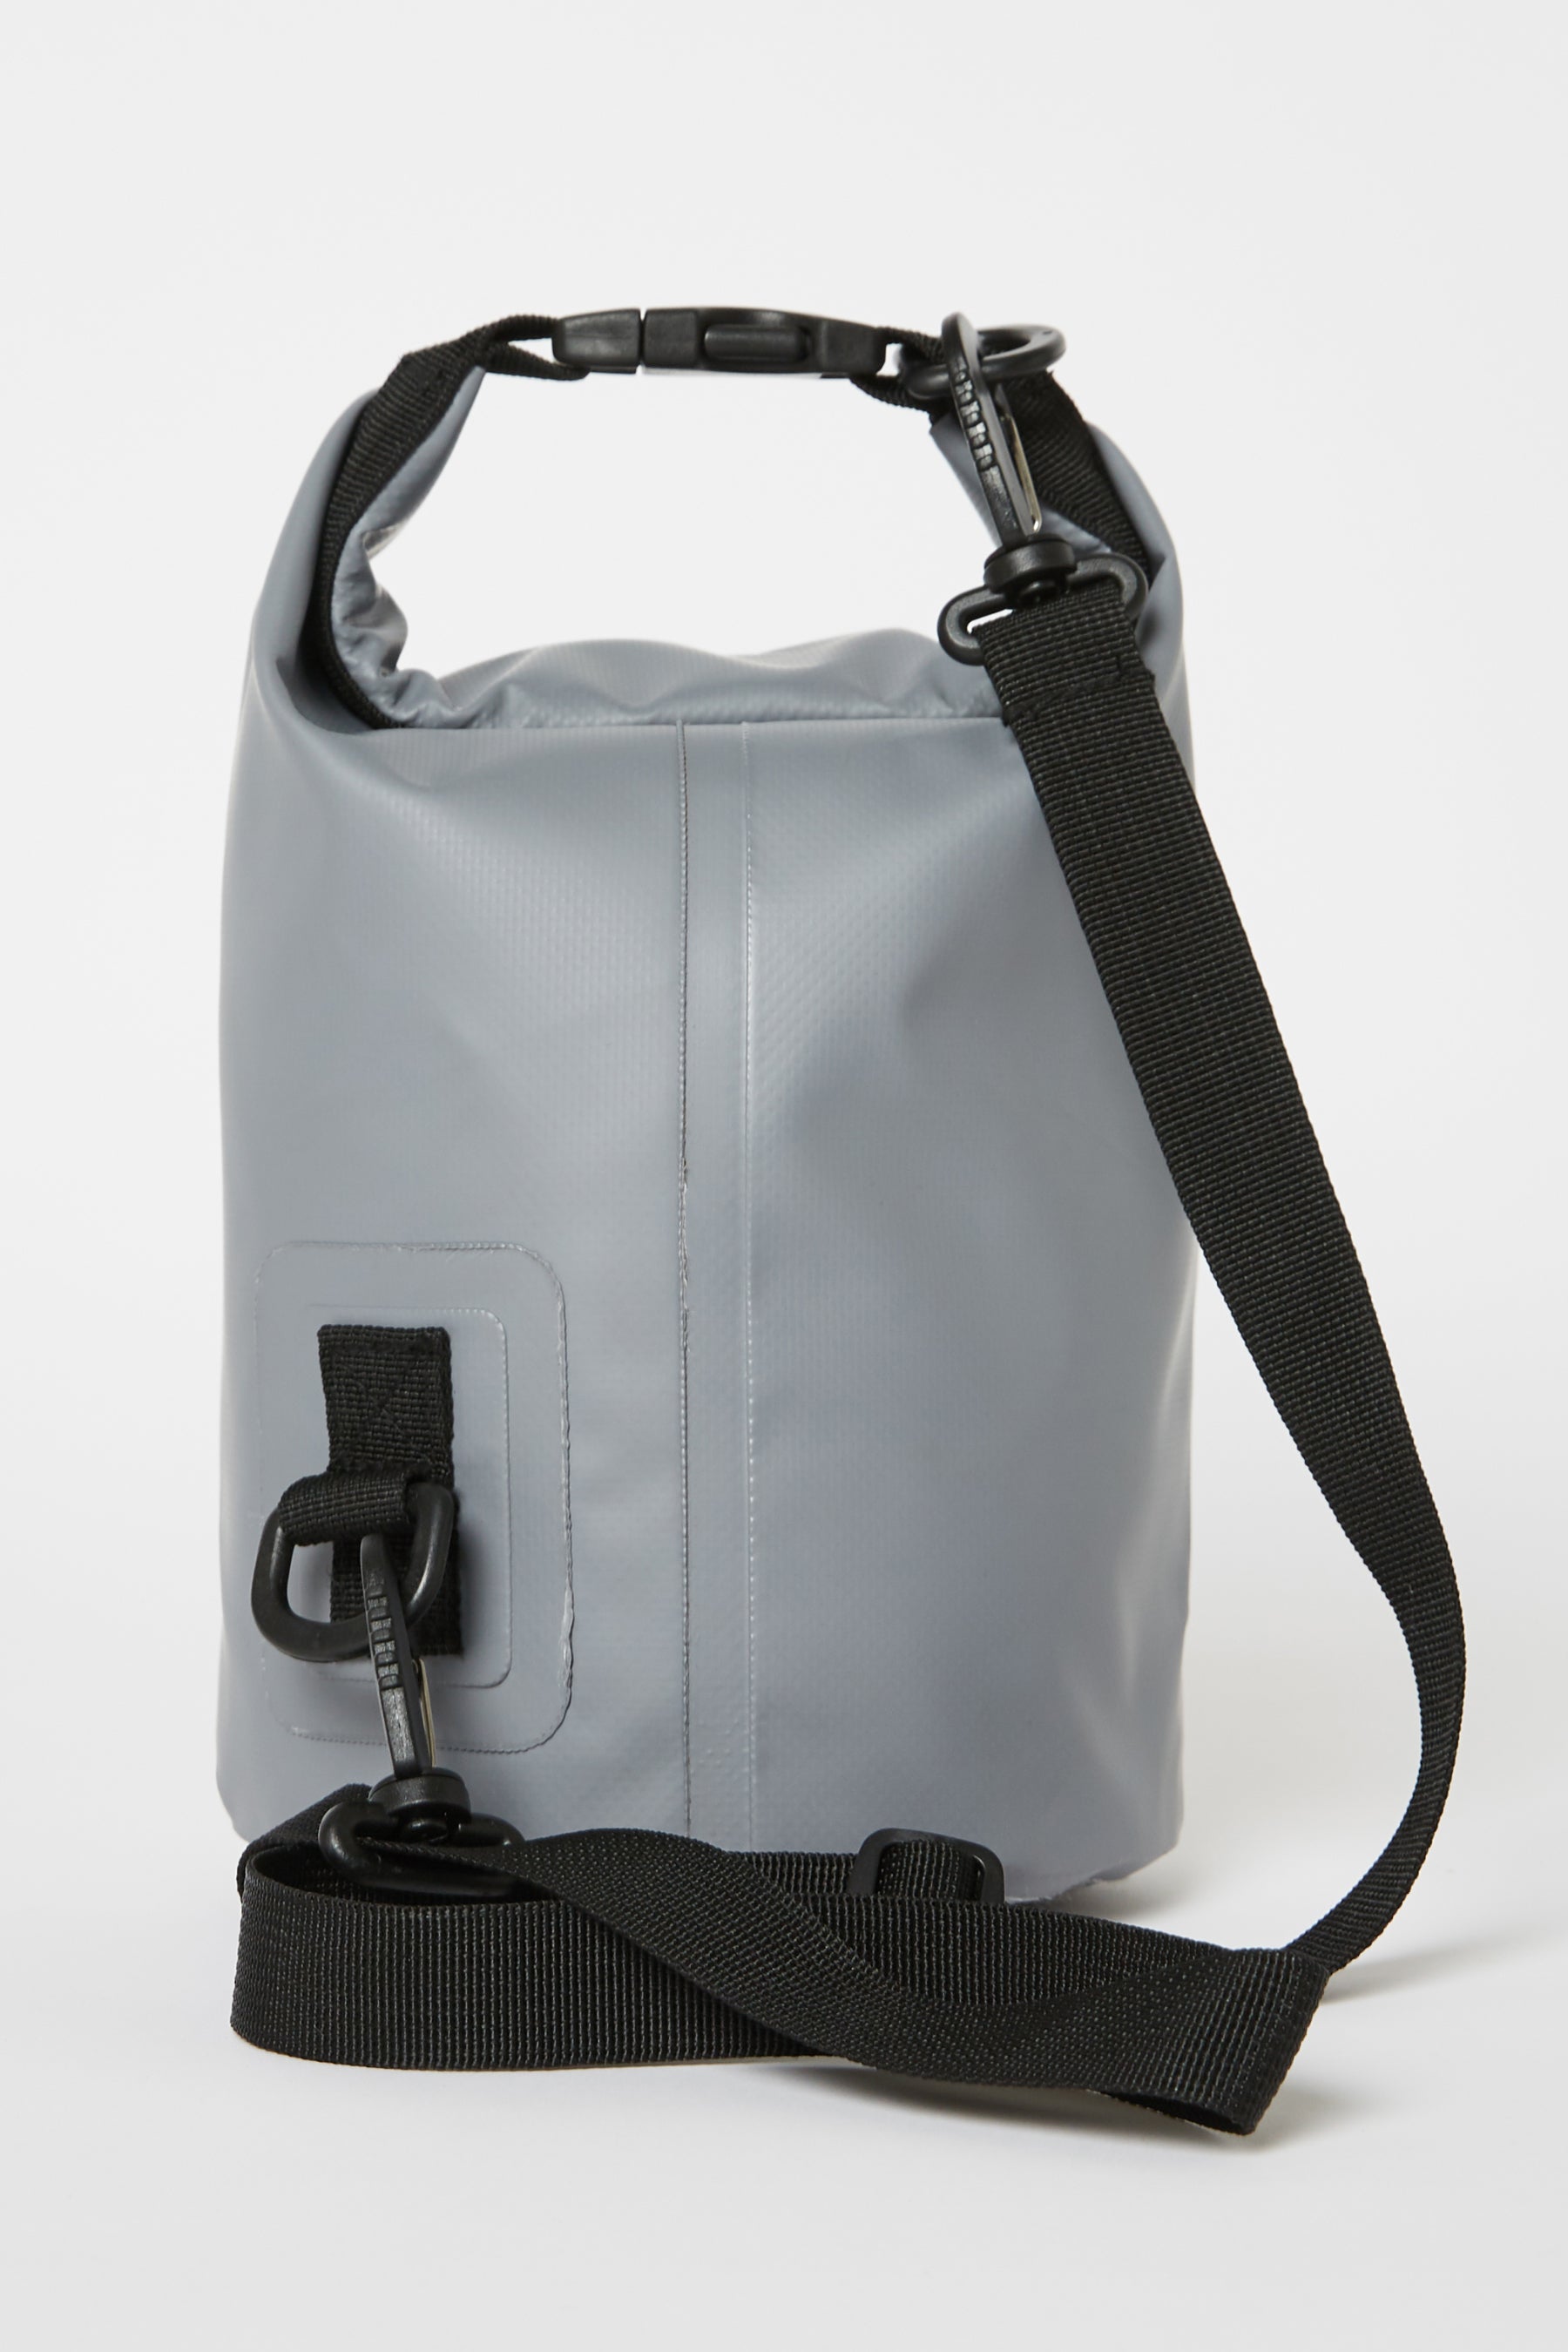 Jetpilot Venture 5l Drysafe Bag - Grey